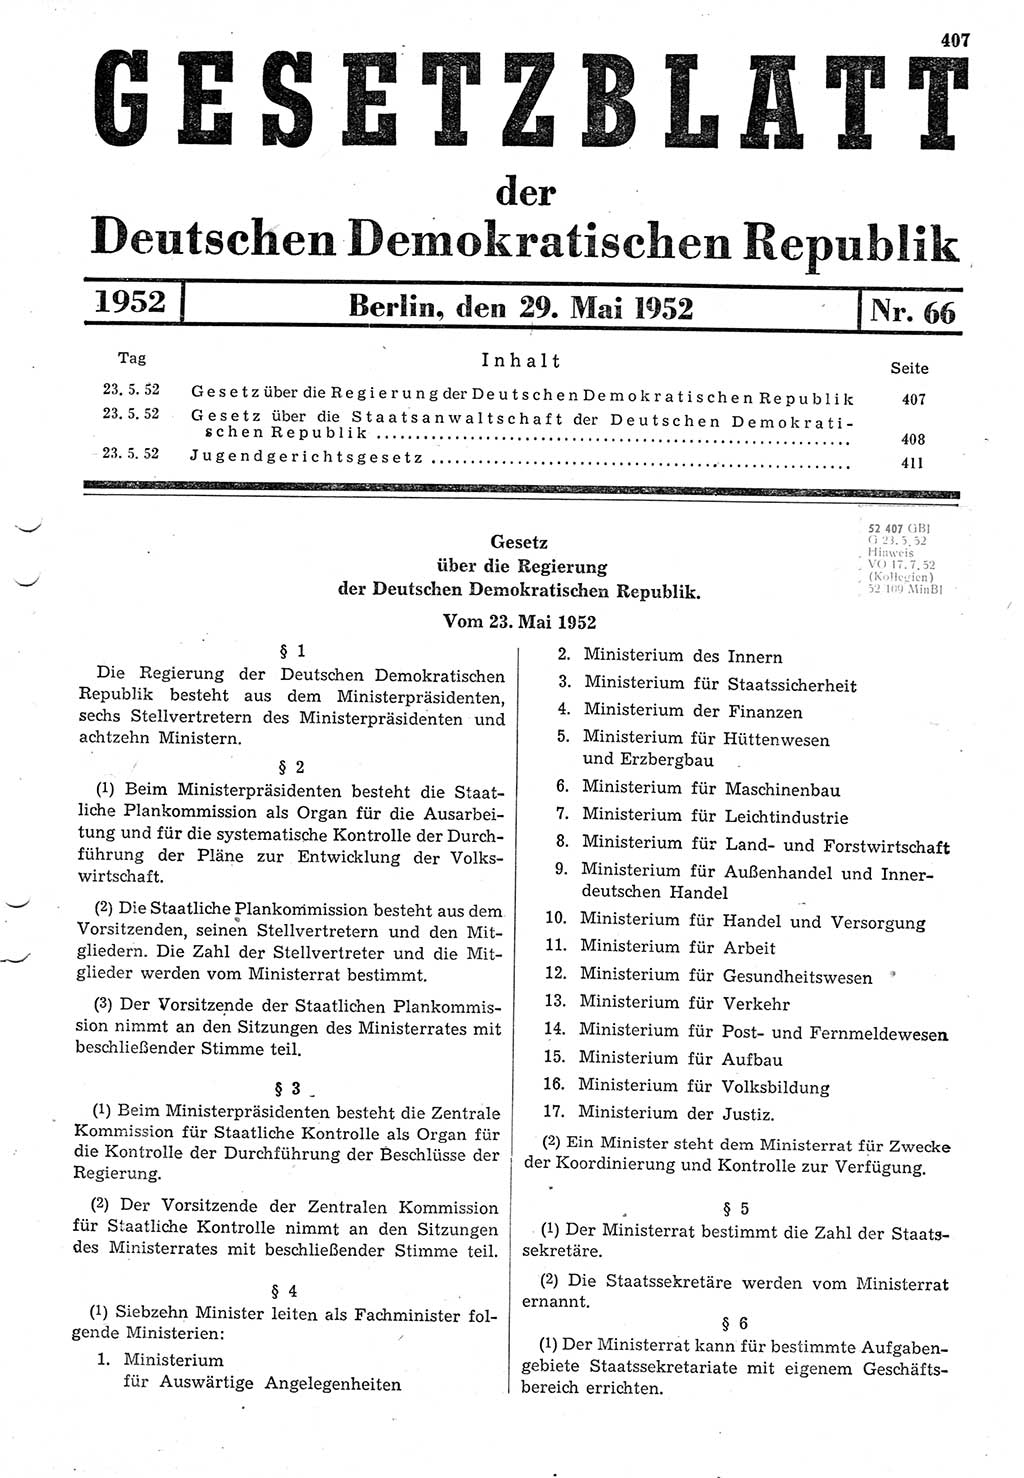 Gesetzblatt (GBl.) der Deutschen Demokratischen Republik (DDR) 1952, Seite 407 (GBl. DDR 1952, S. 407)